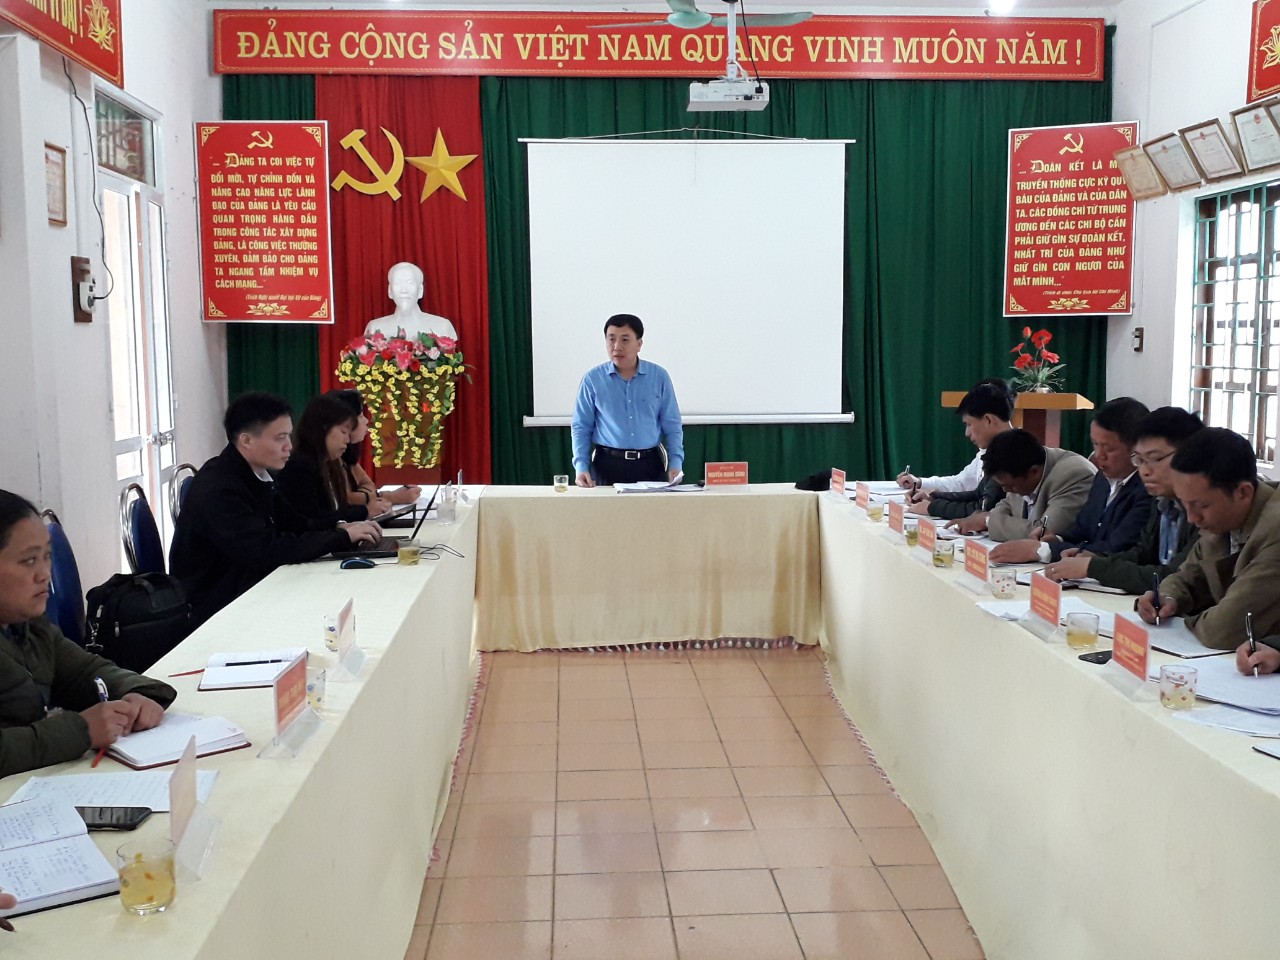 Đồng chí Nguyễn Mạnh Dũng - Phó Bí thư Tỉnh ủy làm việc tại xã.